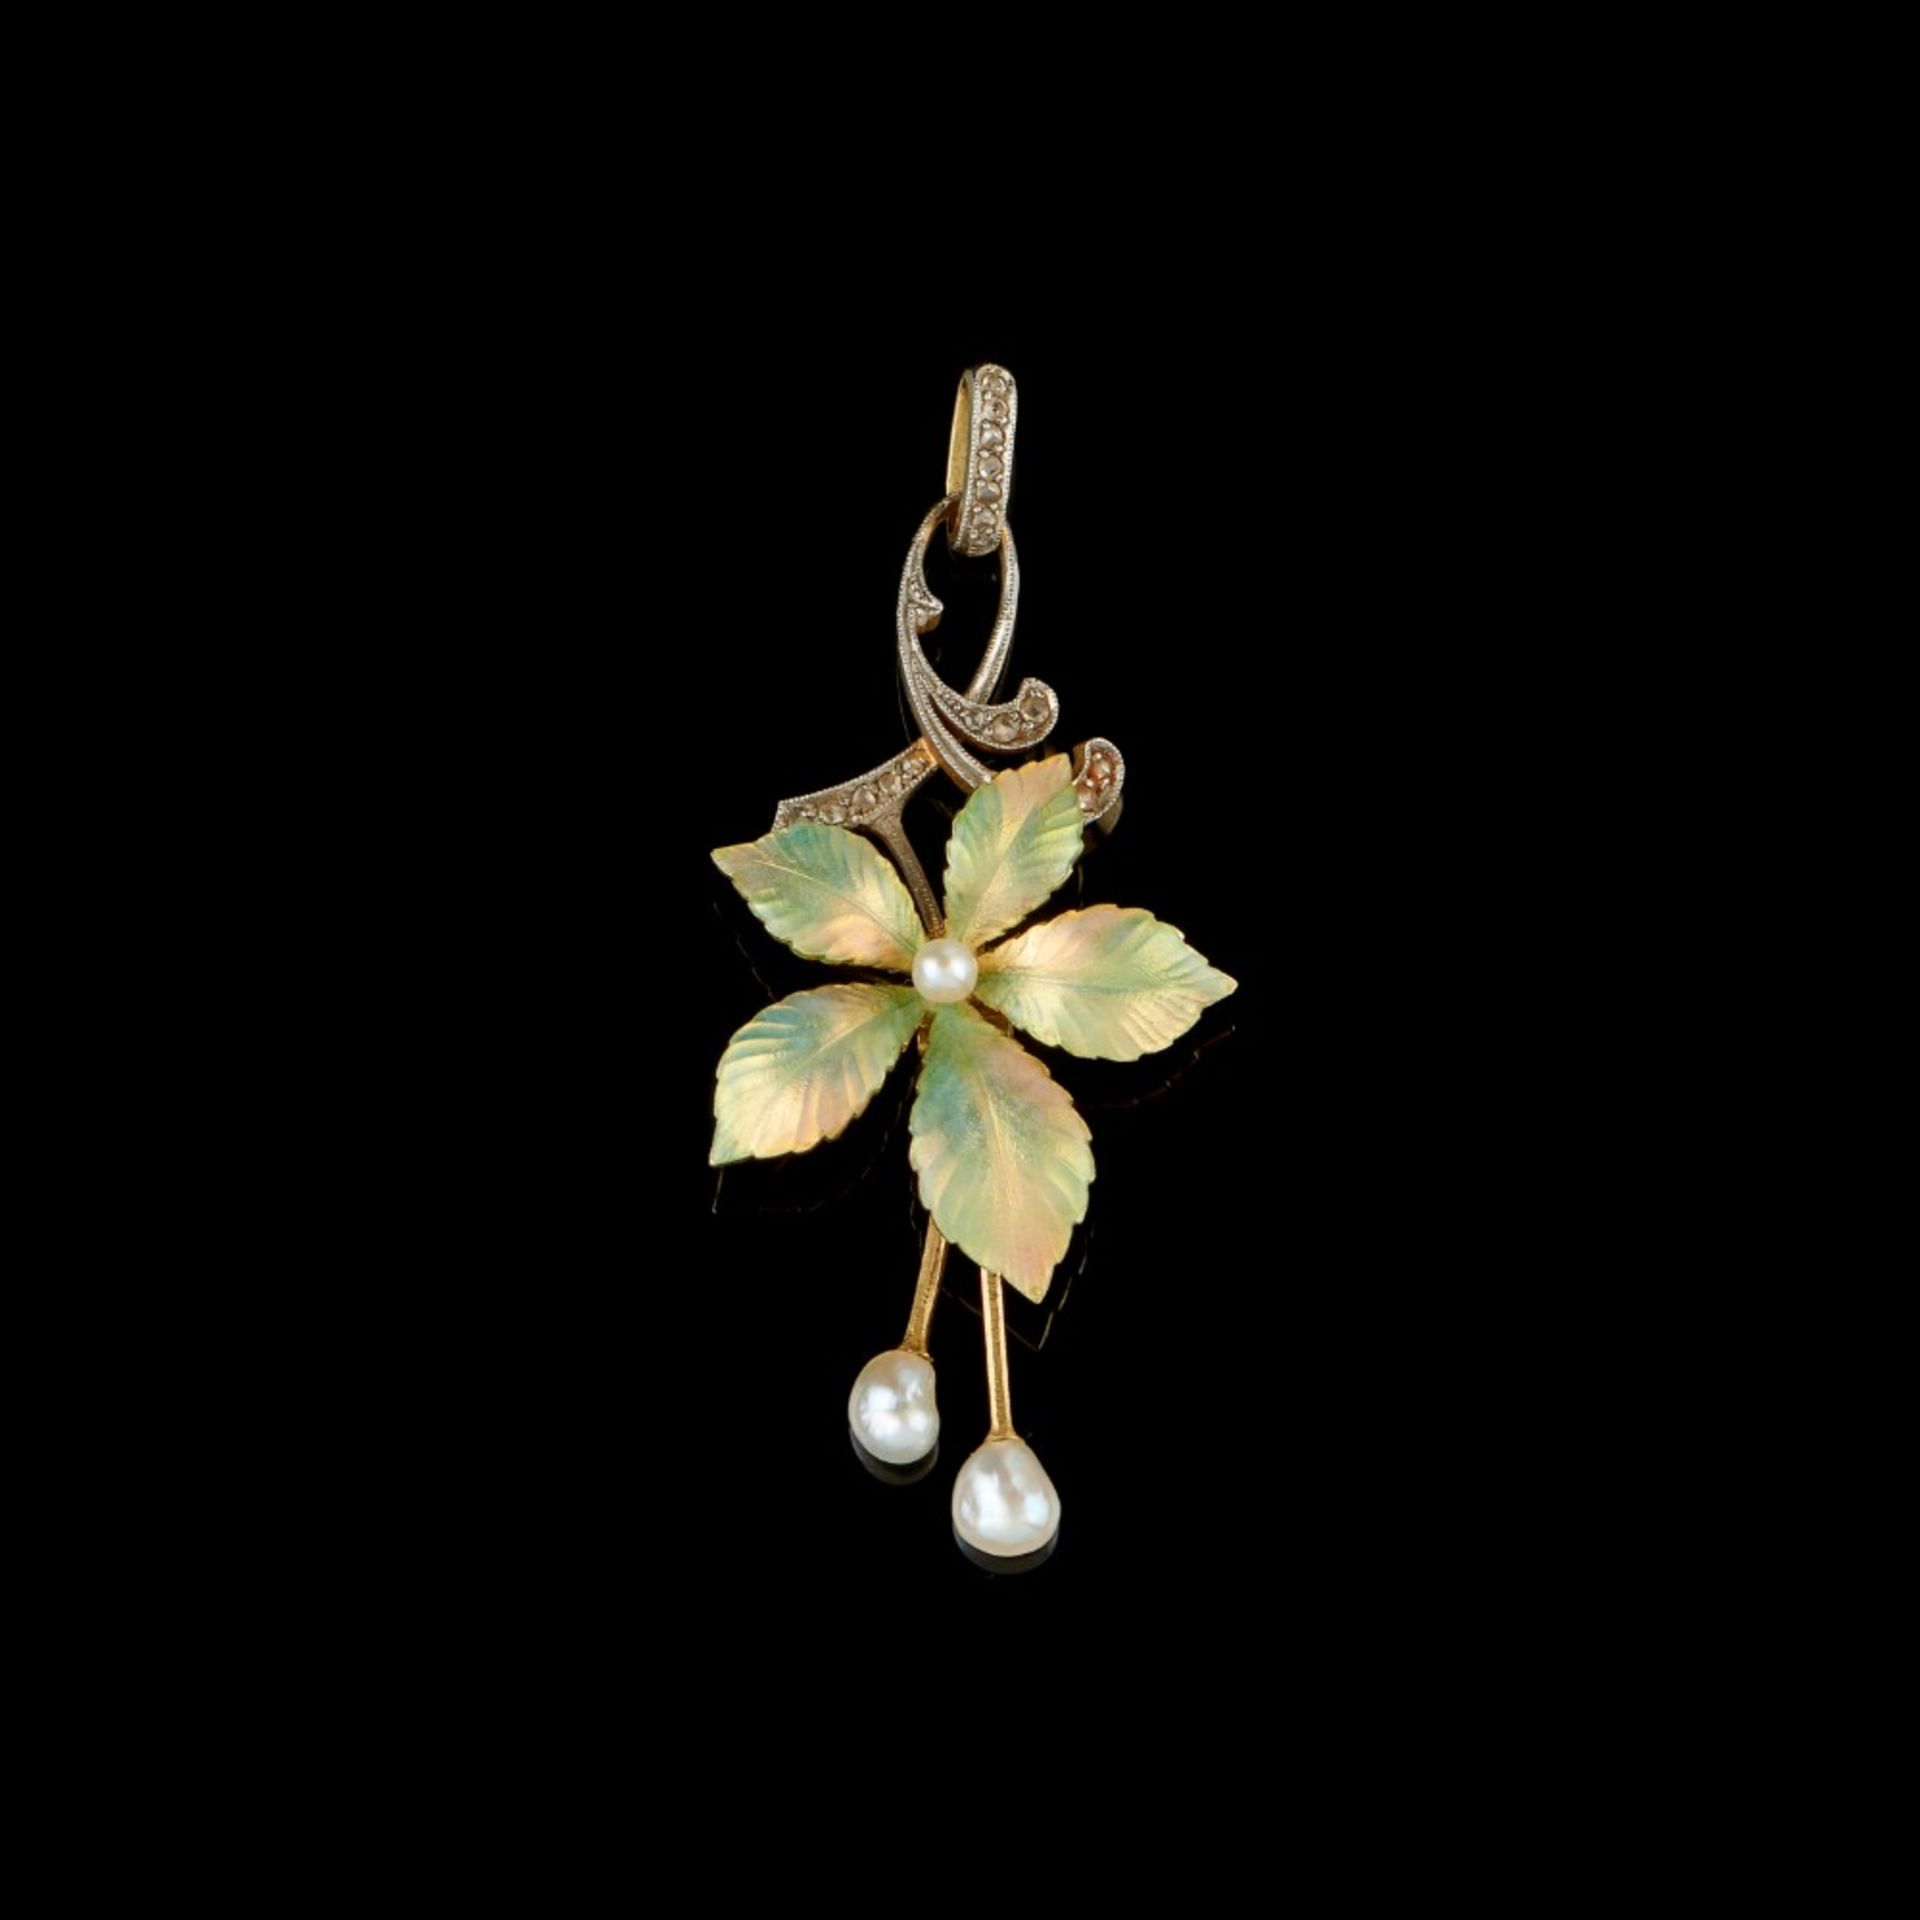  An Art Nouveau floral pendant